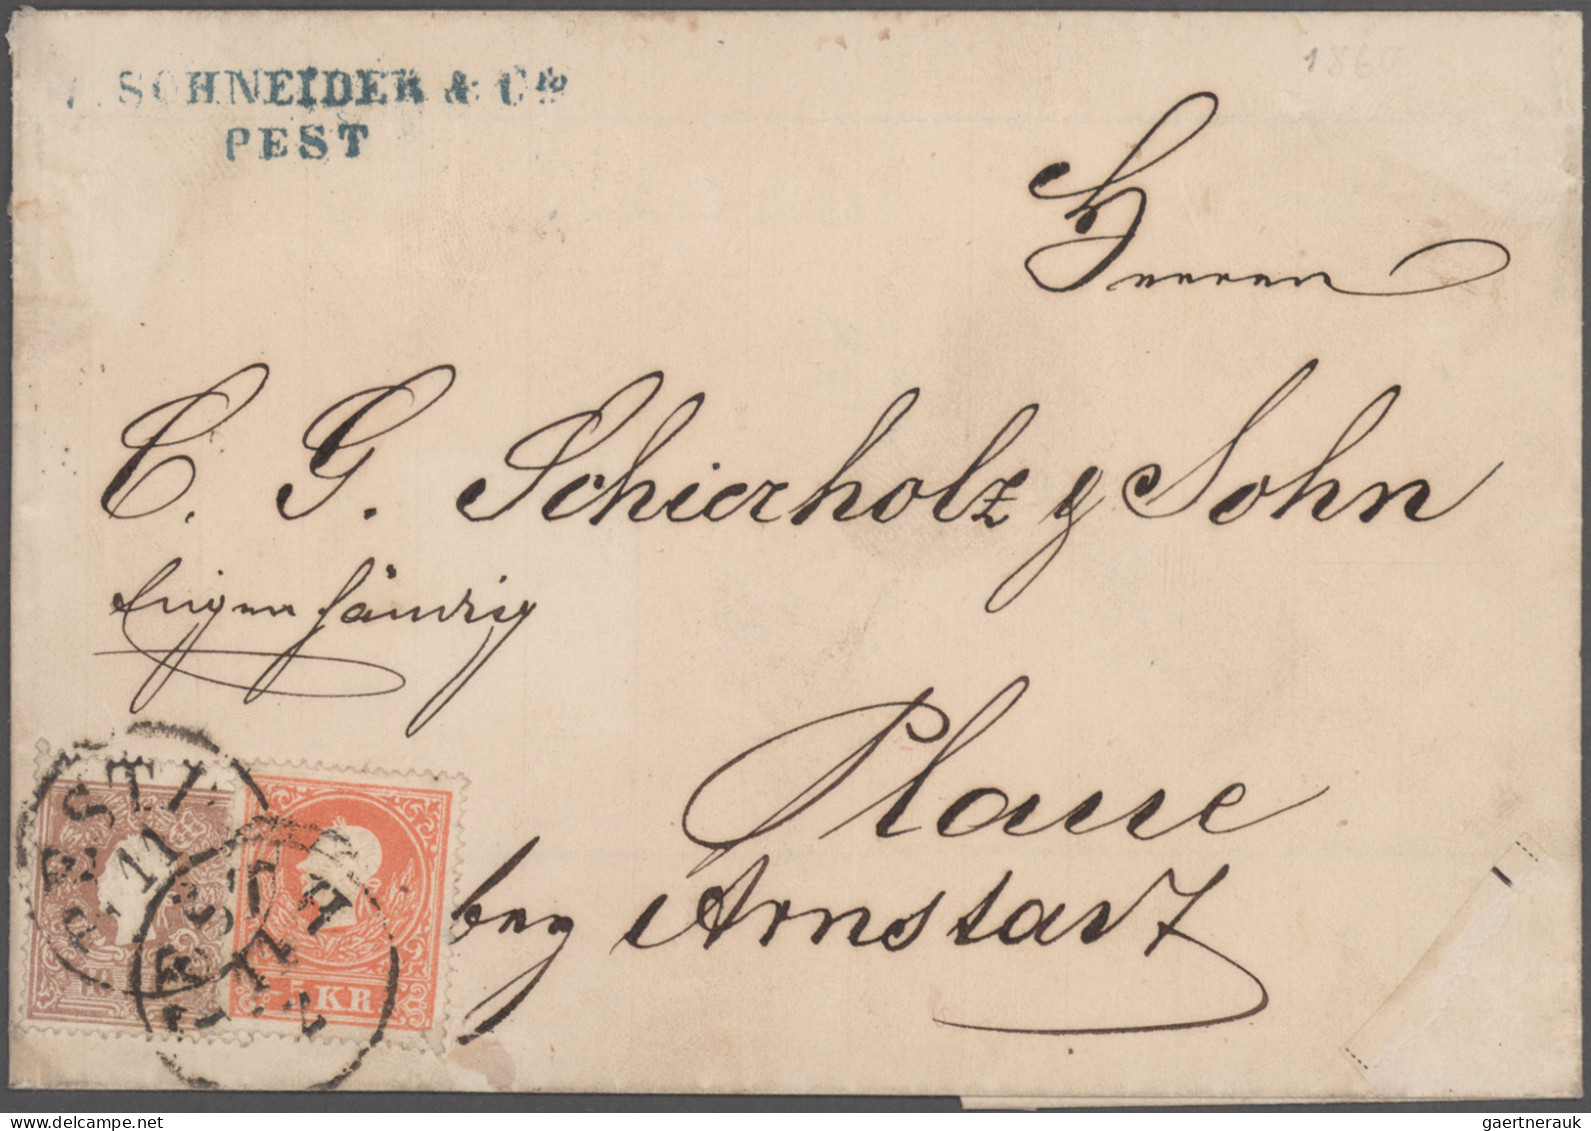 Österreich: 1861/1876, Partie von elf Briefen und Karten mit Frankaturen Wappen